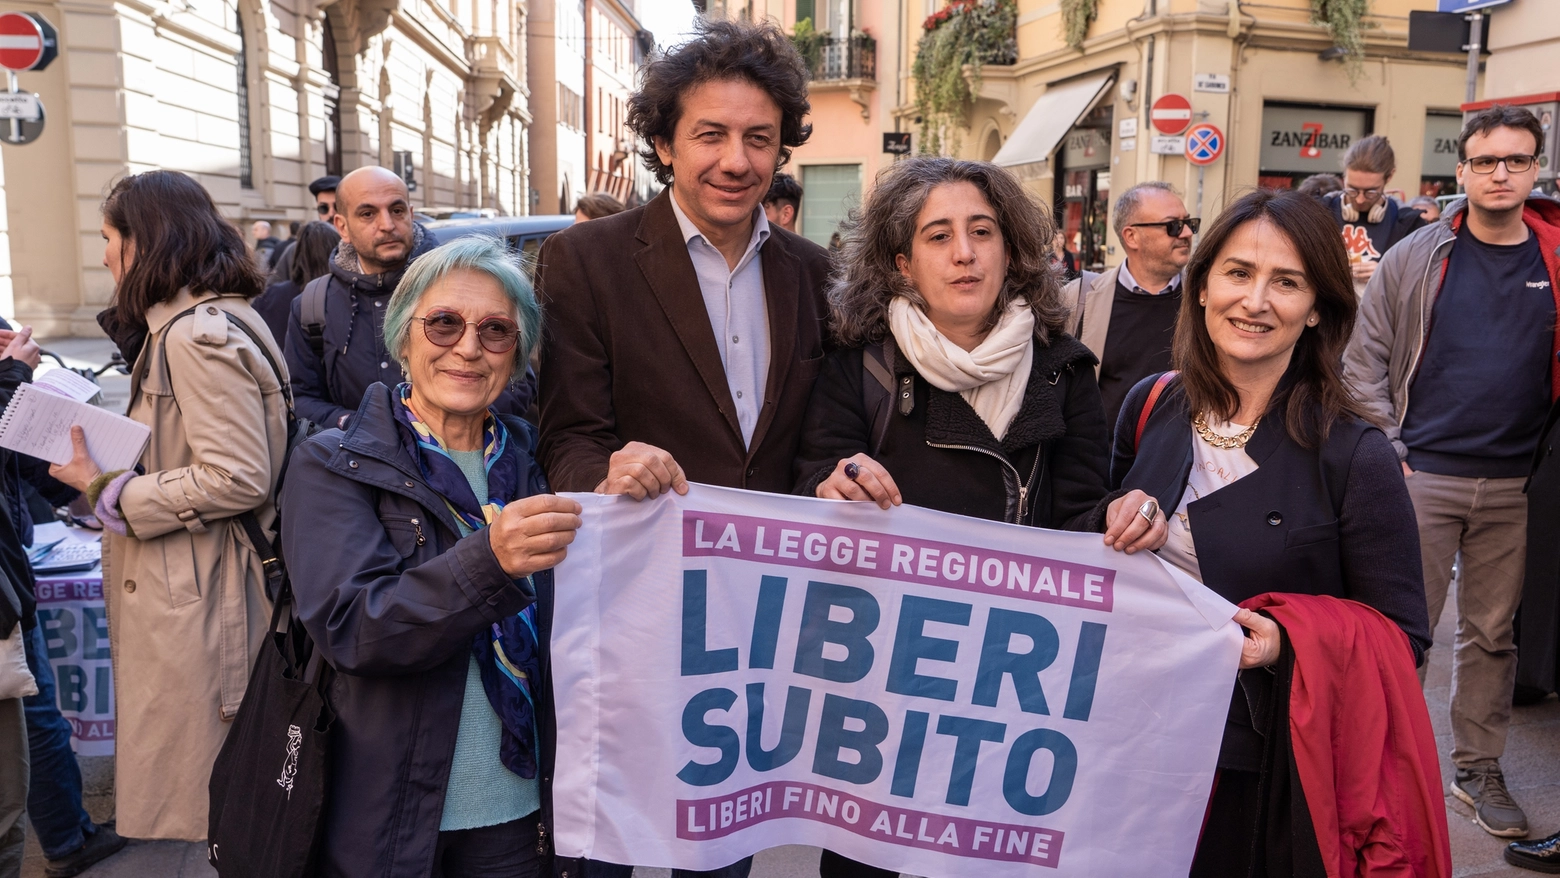 Marco Cappato, tesoriere dell'Associazione Luca Coscioni, con alcuni sostenitori della legge "Liberi subito"